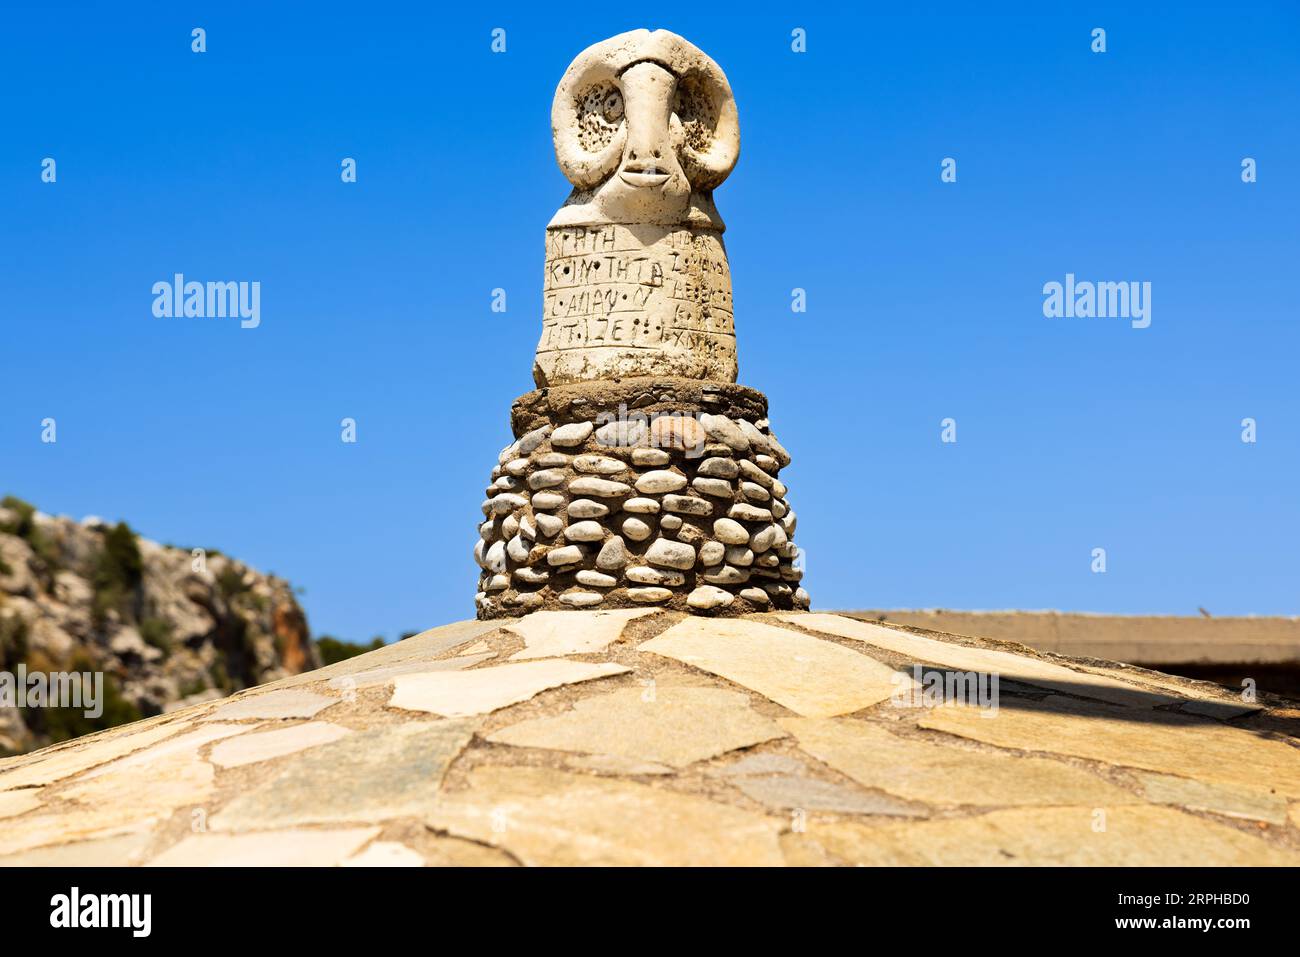 Scopri la saggezza senza tempo impressa nello sguardo sereno della statua della testa di un ariete, che adorna con orgoglio il tetto di un santuario cretese. Sotto di esso, l'antico GRE Foto Stock